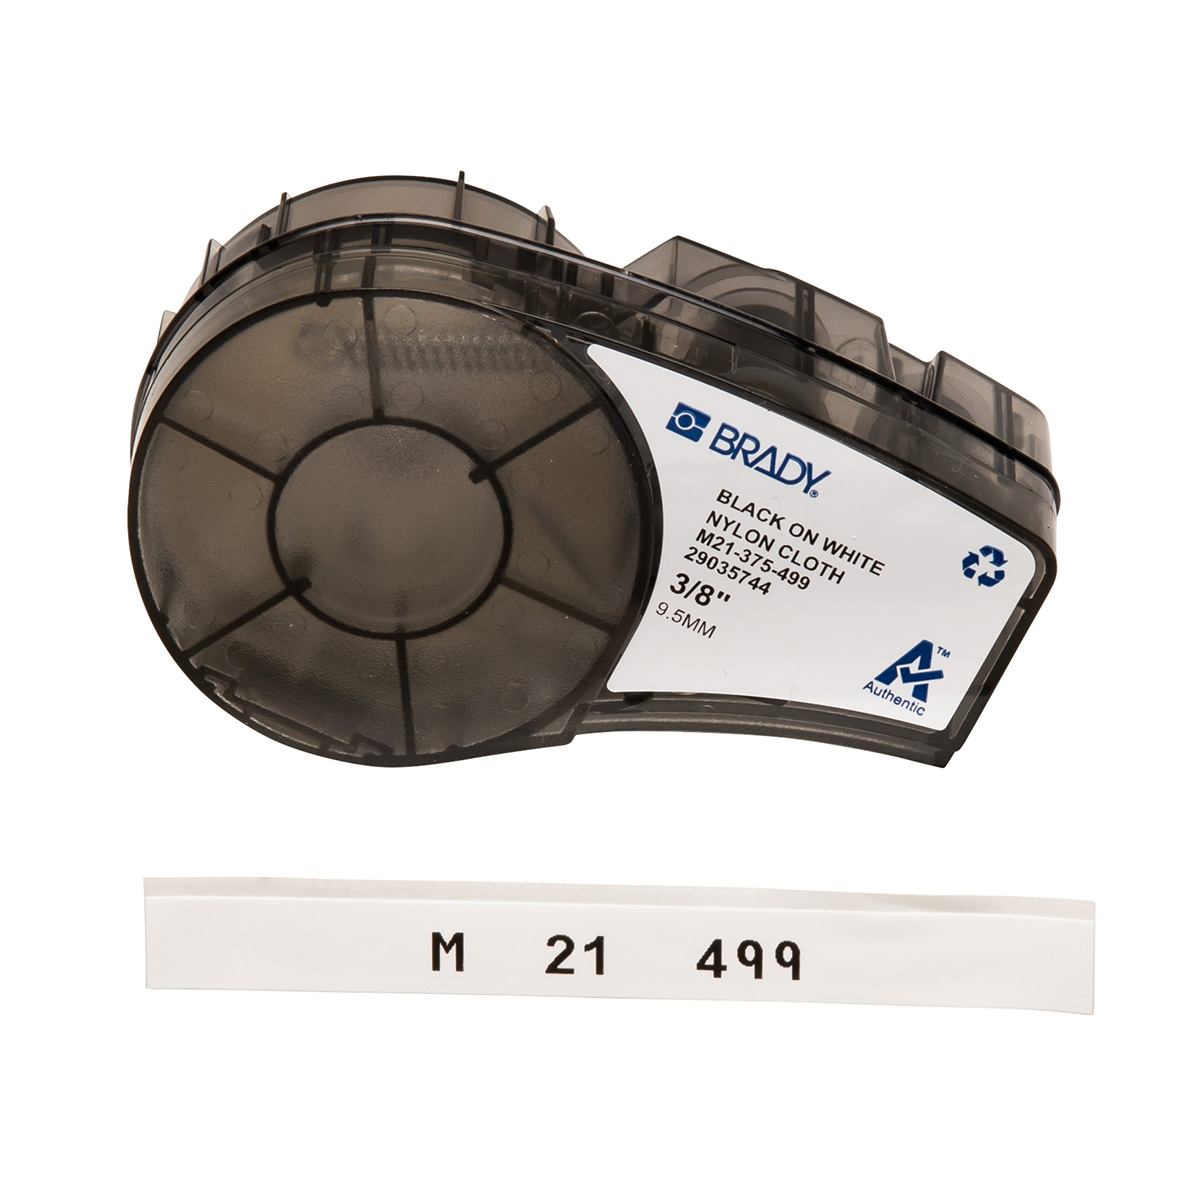 Étiquettes en tissu nylon pour panneaux de connexion, fils et câbles pour étiqueteuses M211 et M210